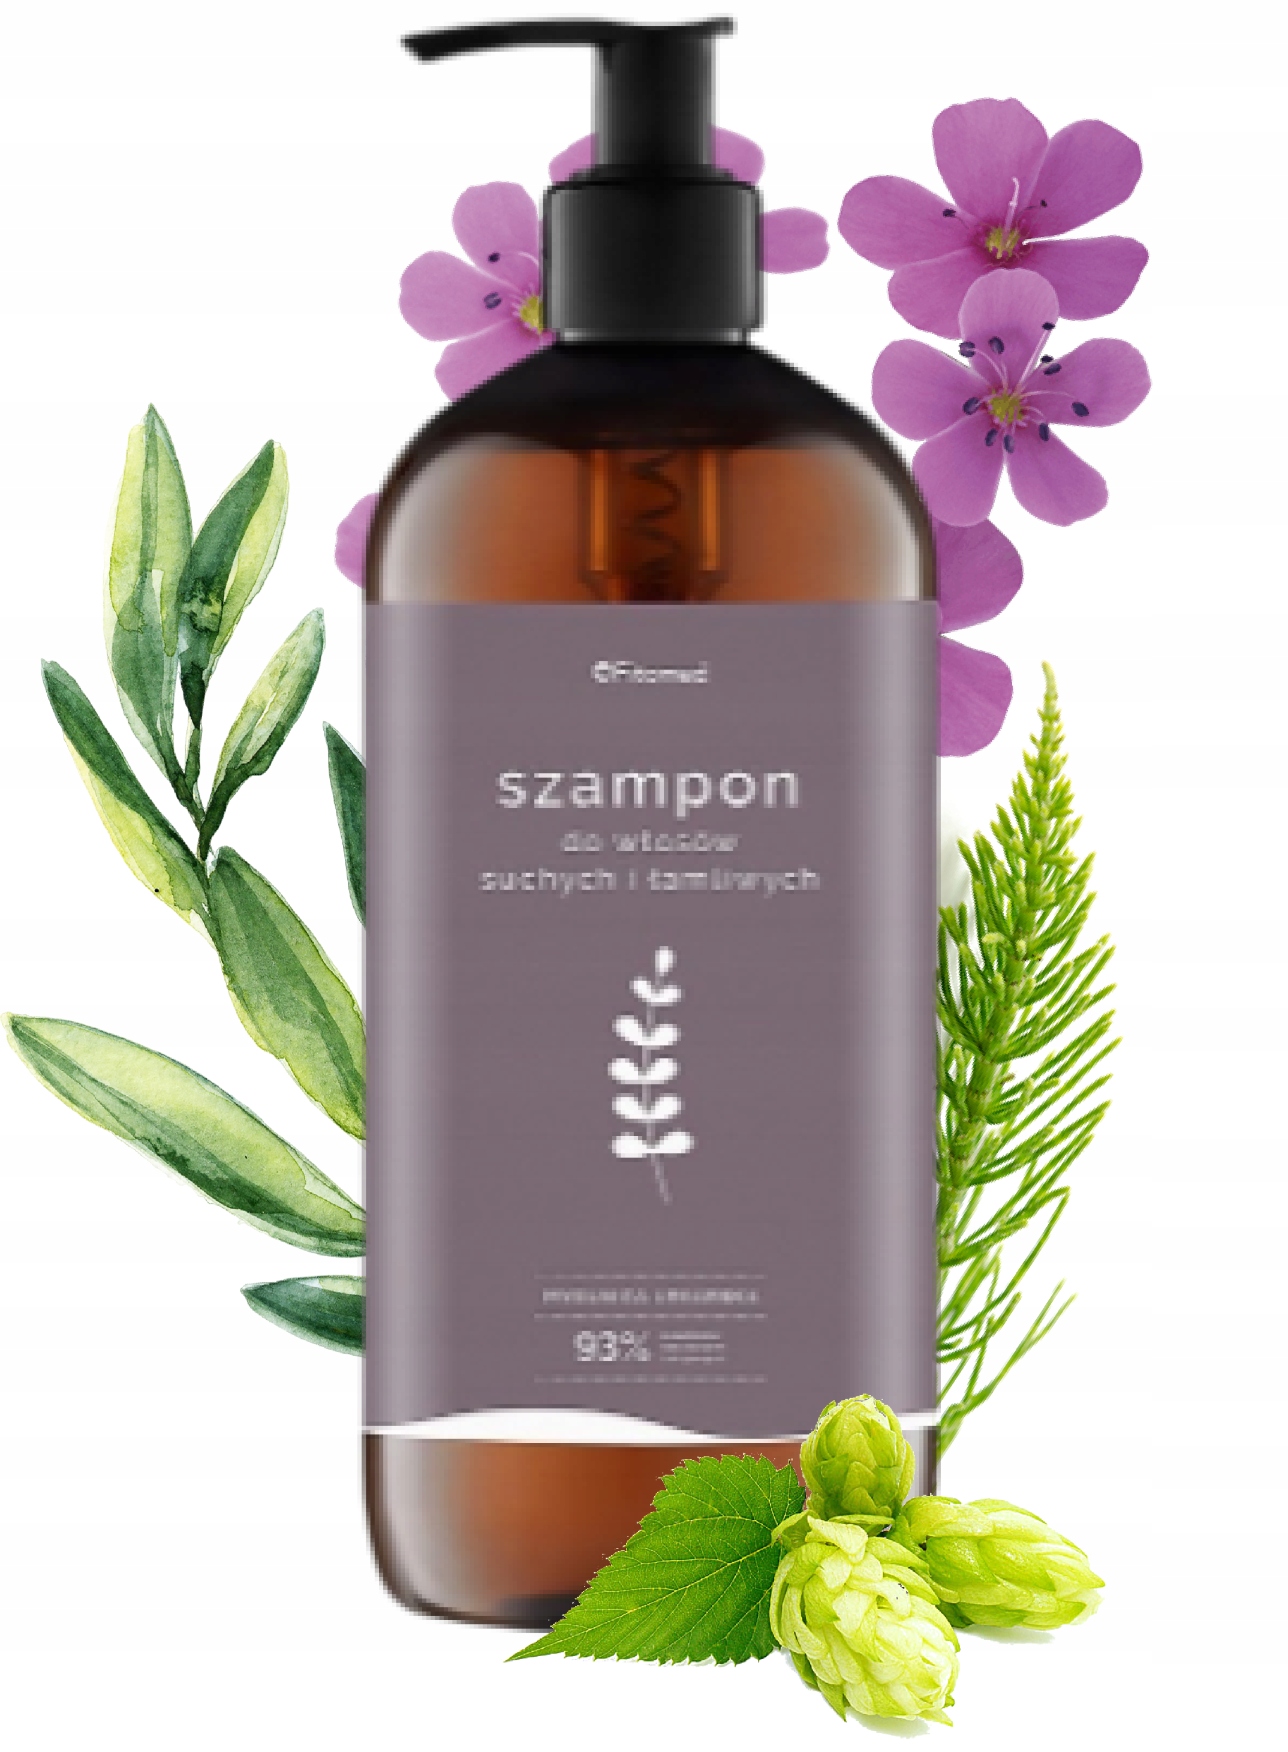 szampon ziołowy do włosów suchych fitomed